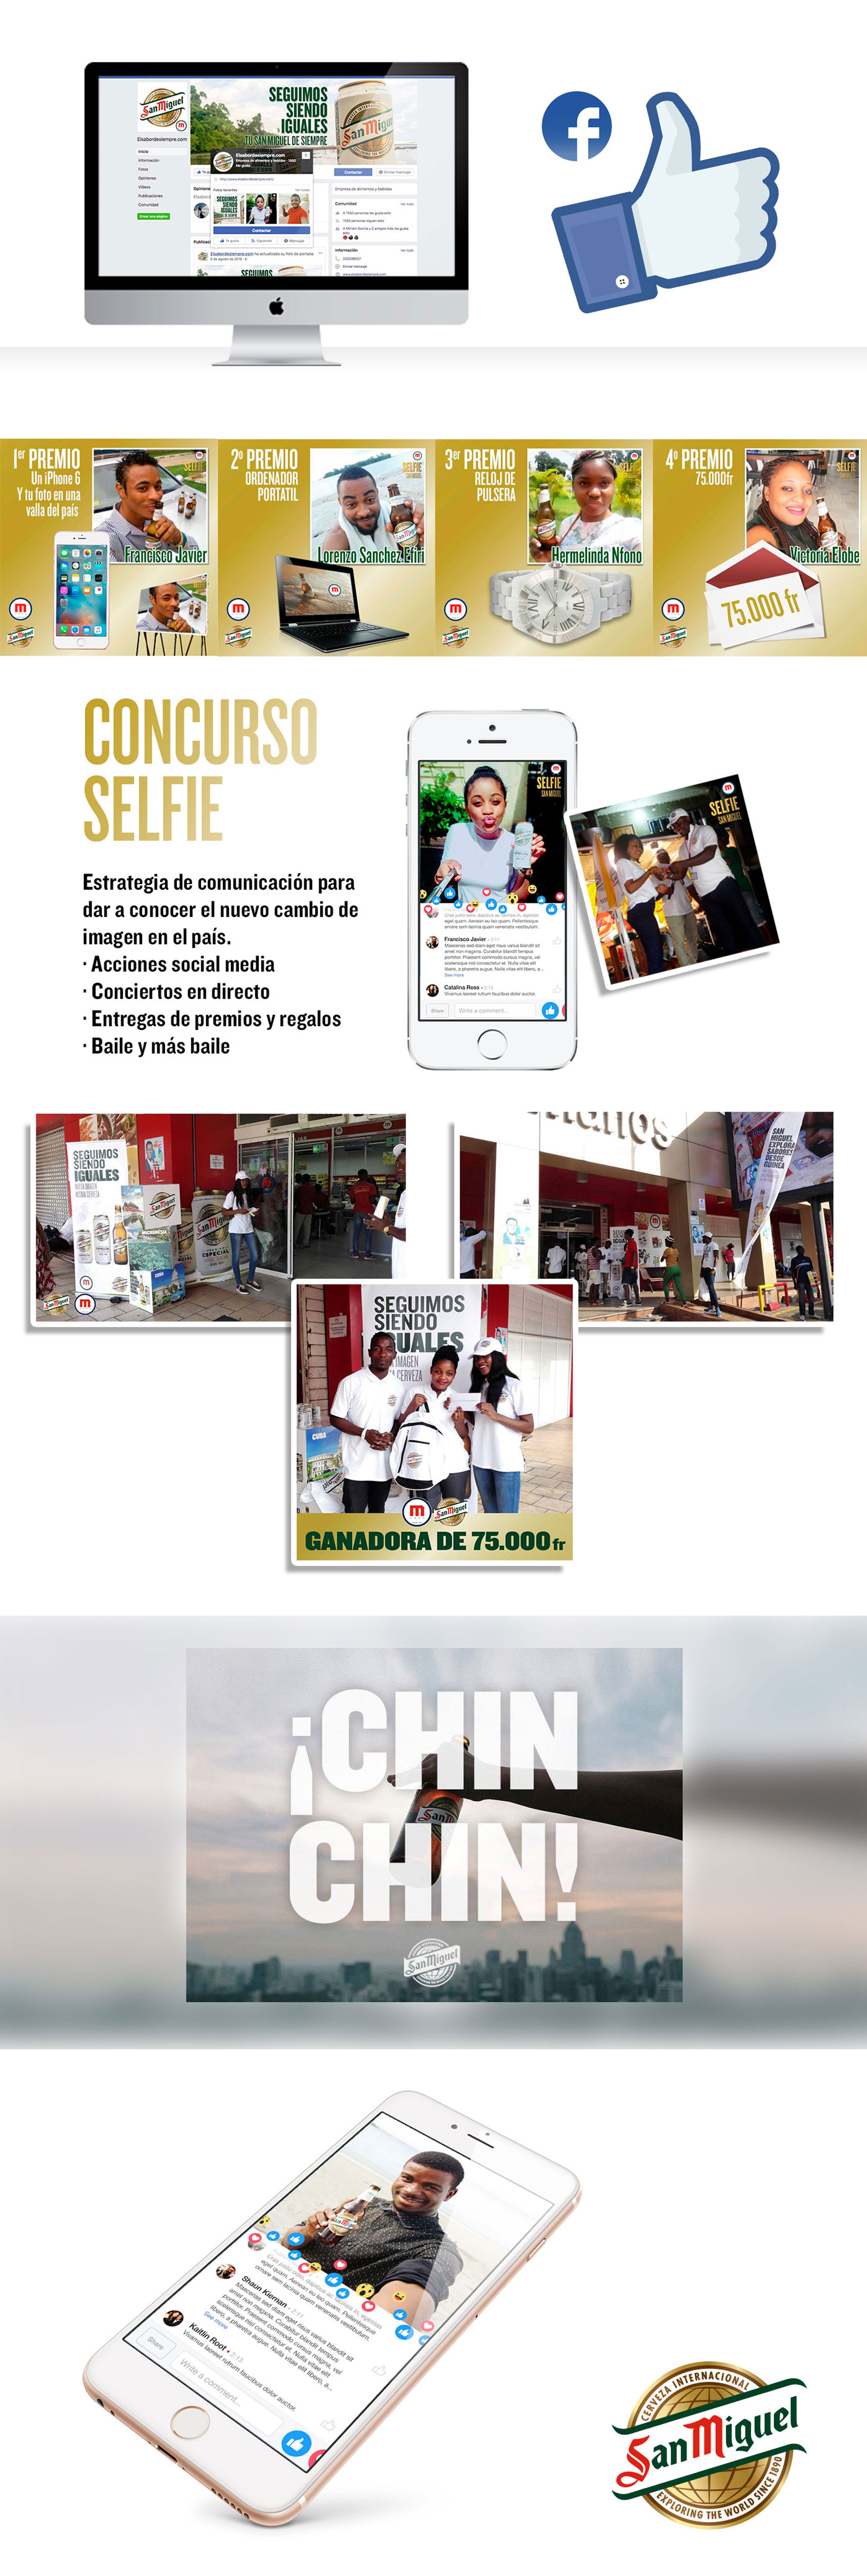 proyecto-san-miguel-agencia-de-publicidad-alcala-de-henares